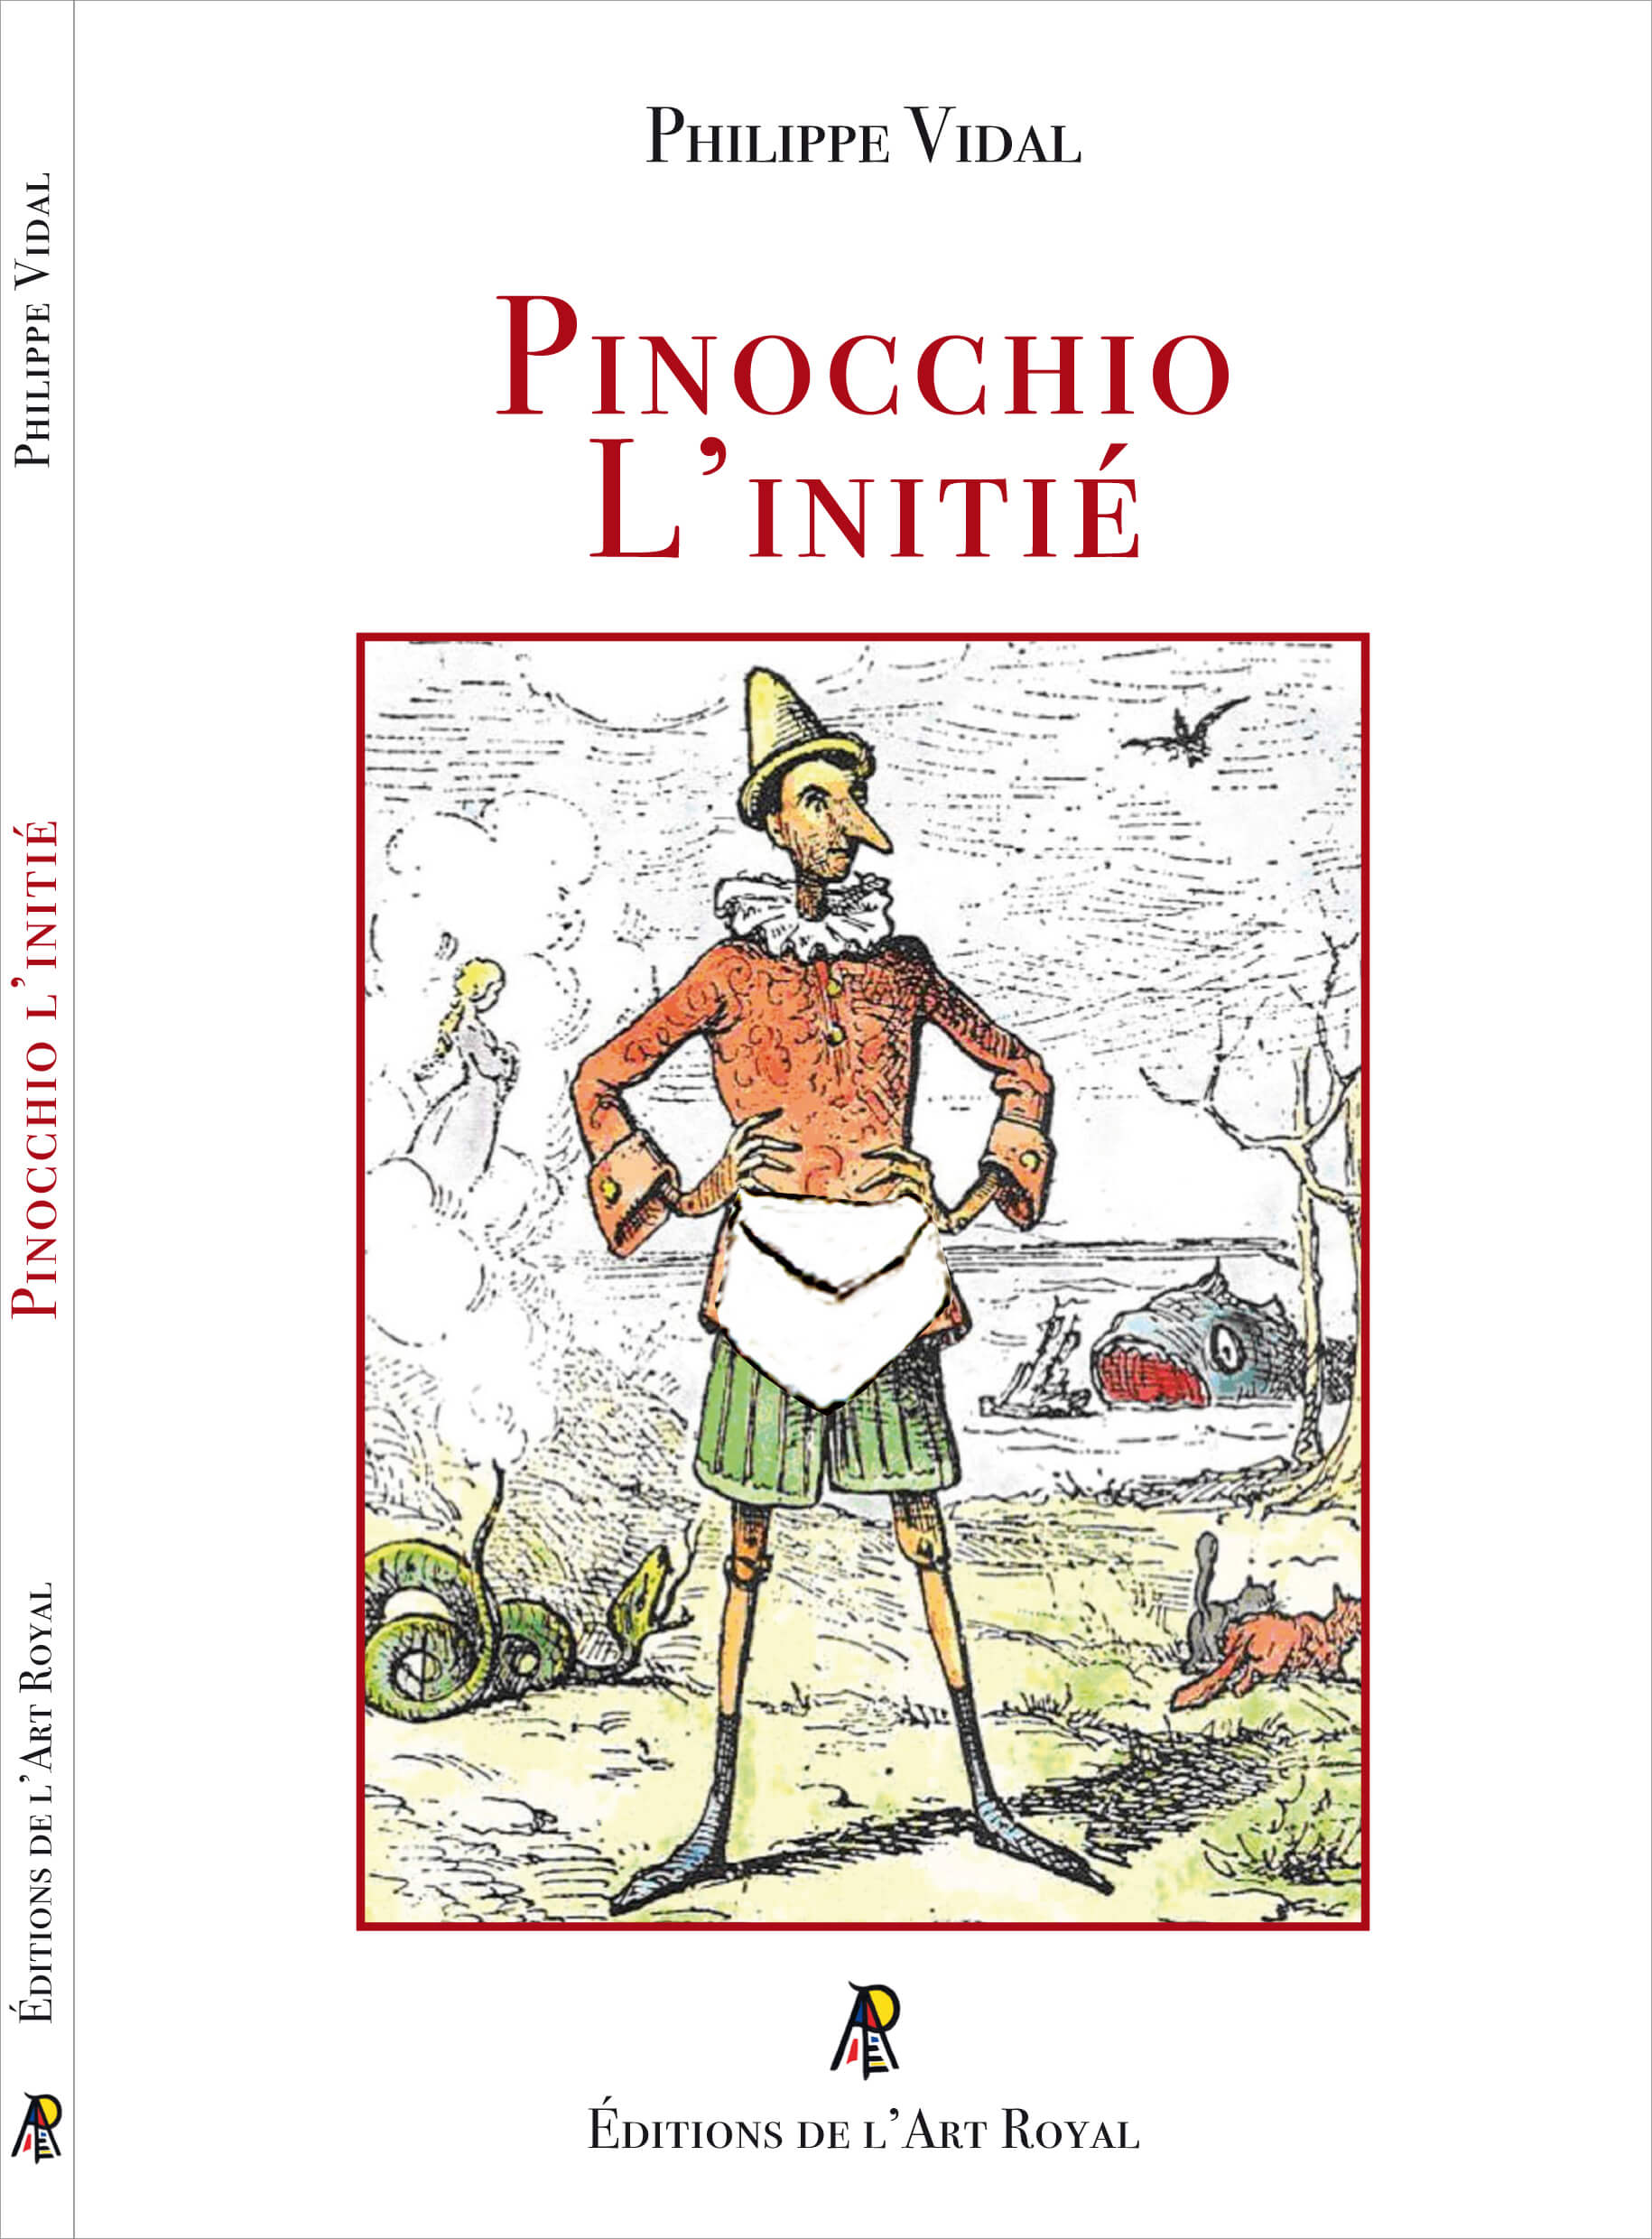 Pinocchio l’initié, Philippe Vidal